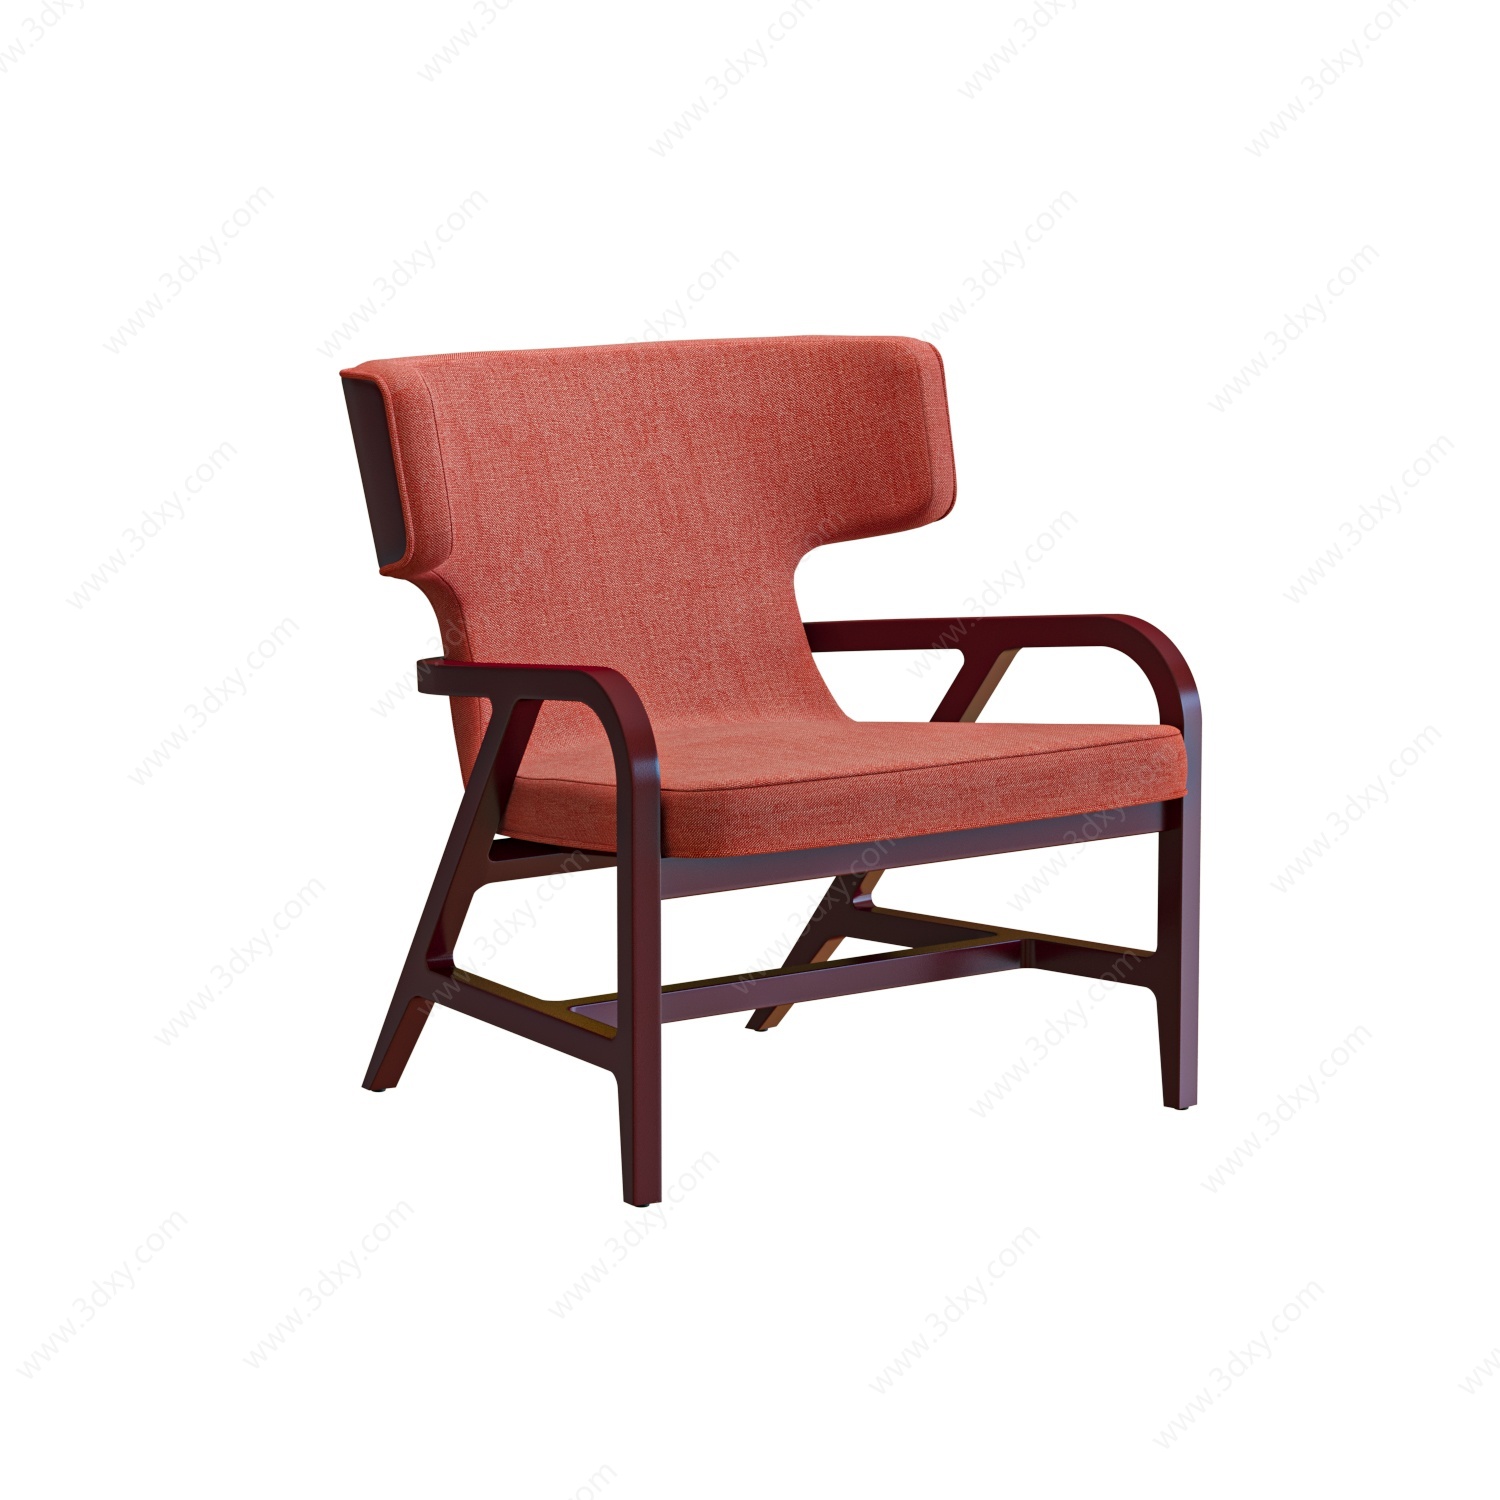 简欧休闲沙发椅扶手单椅3D模型